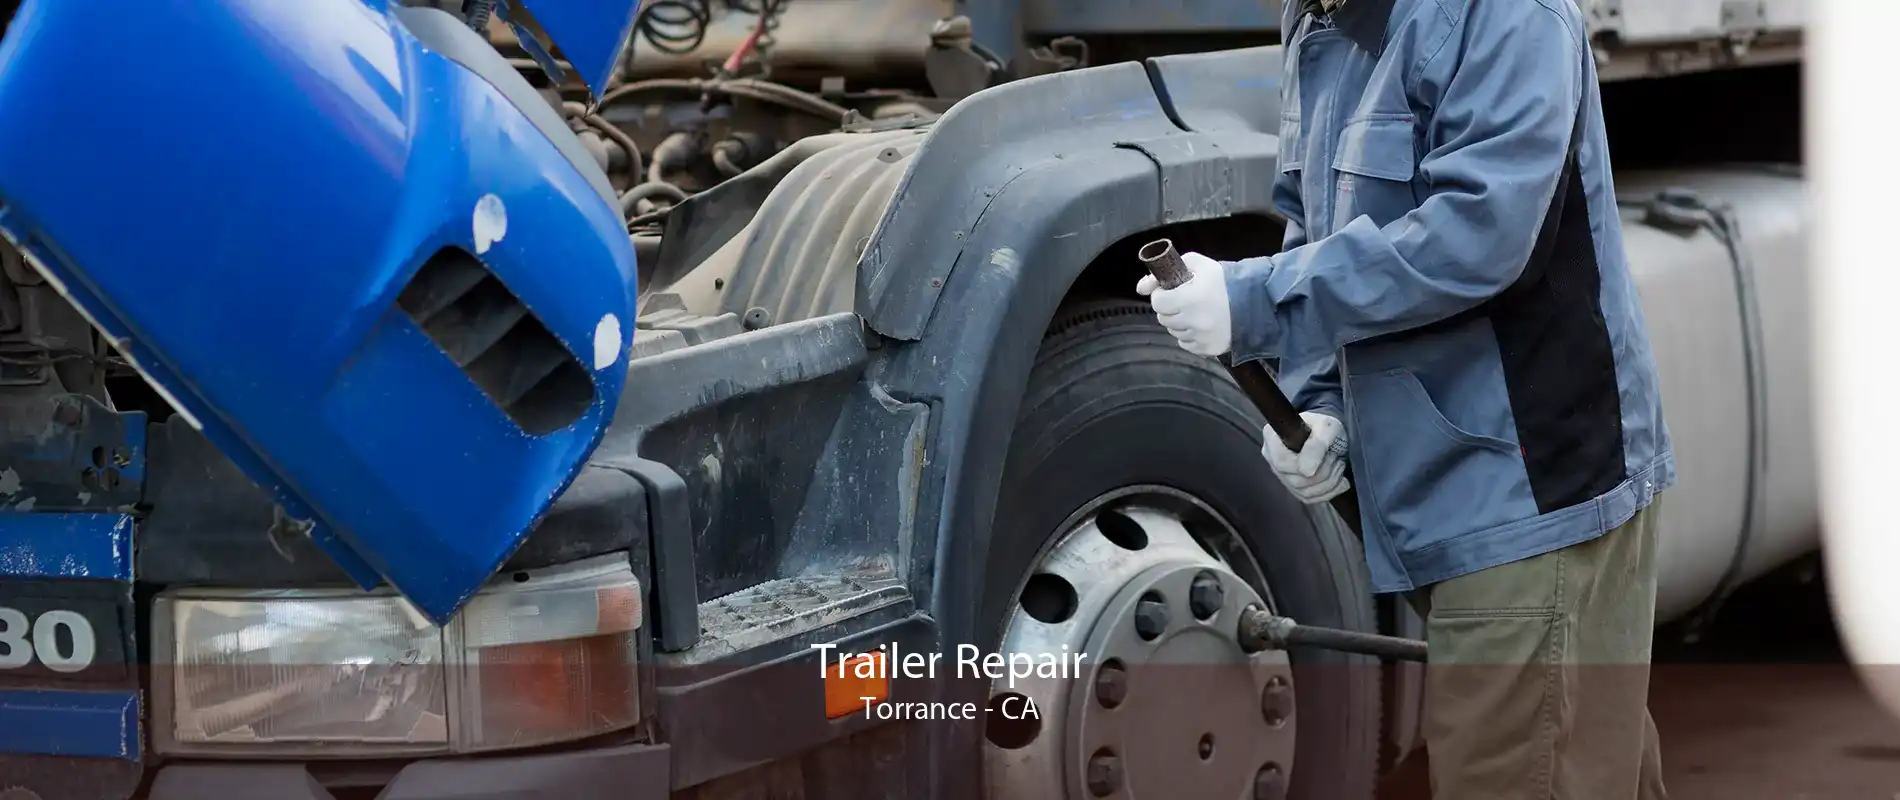 Trailer Repair Torrance - CA